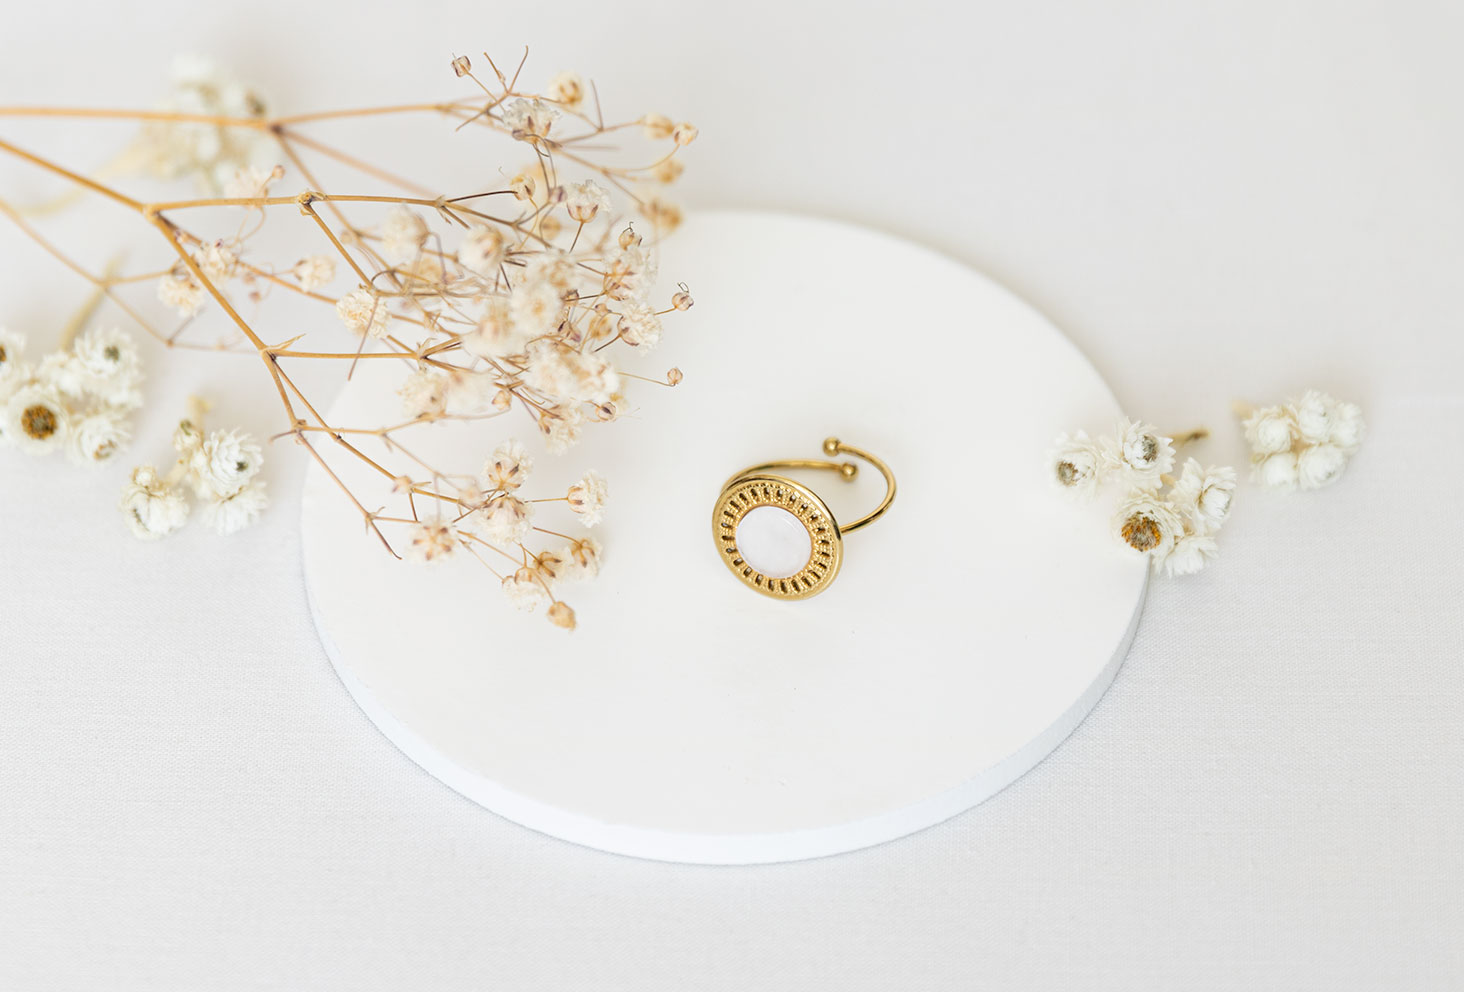 La bague dorée Vaniya Bijoux sur fond blanc, posée sur un support rond blanc au milieu de fleurs séchées